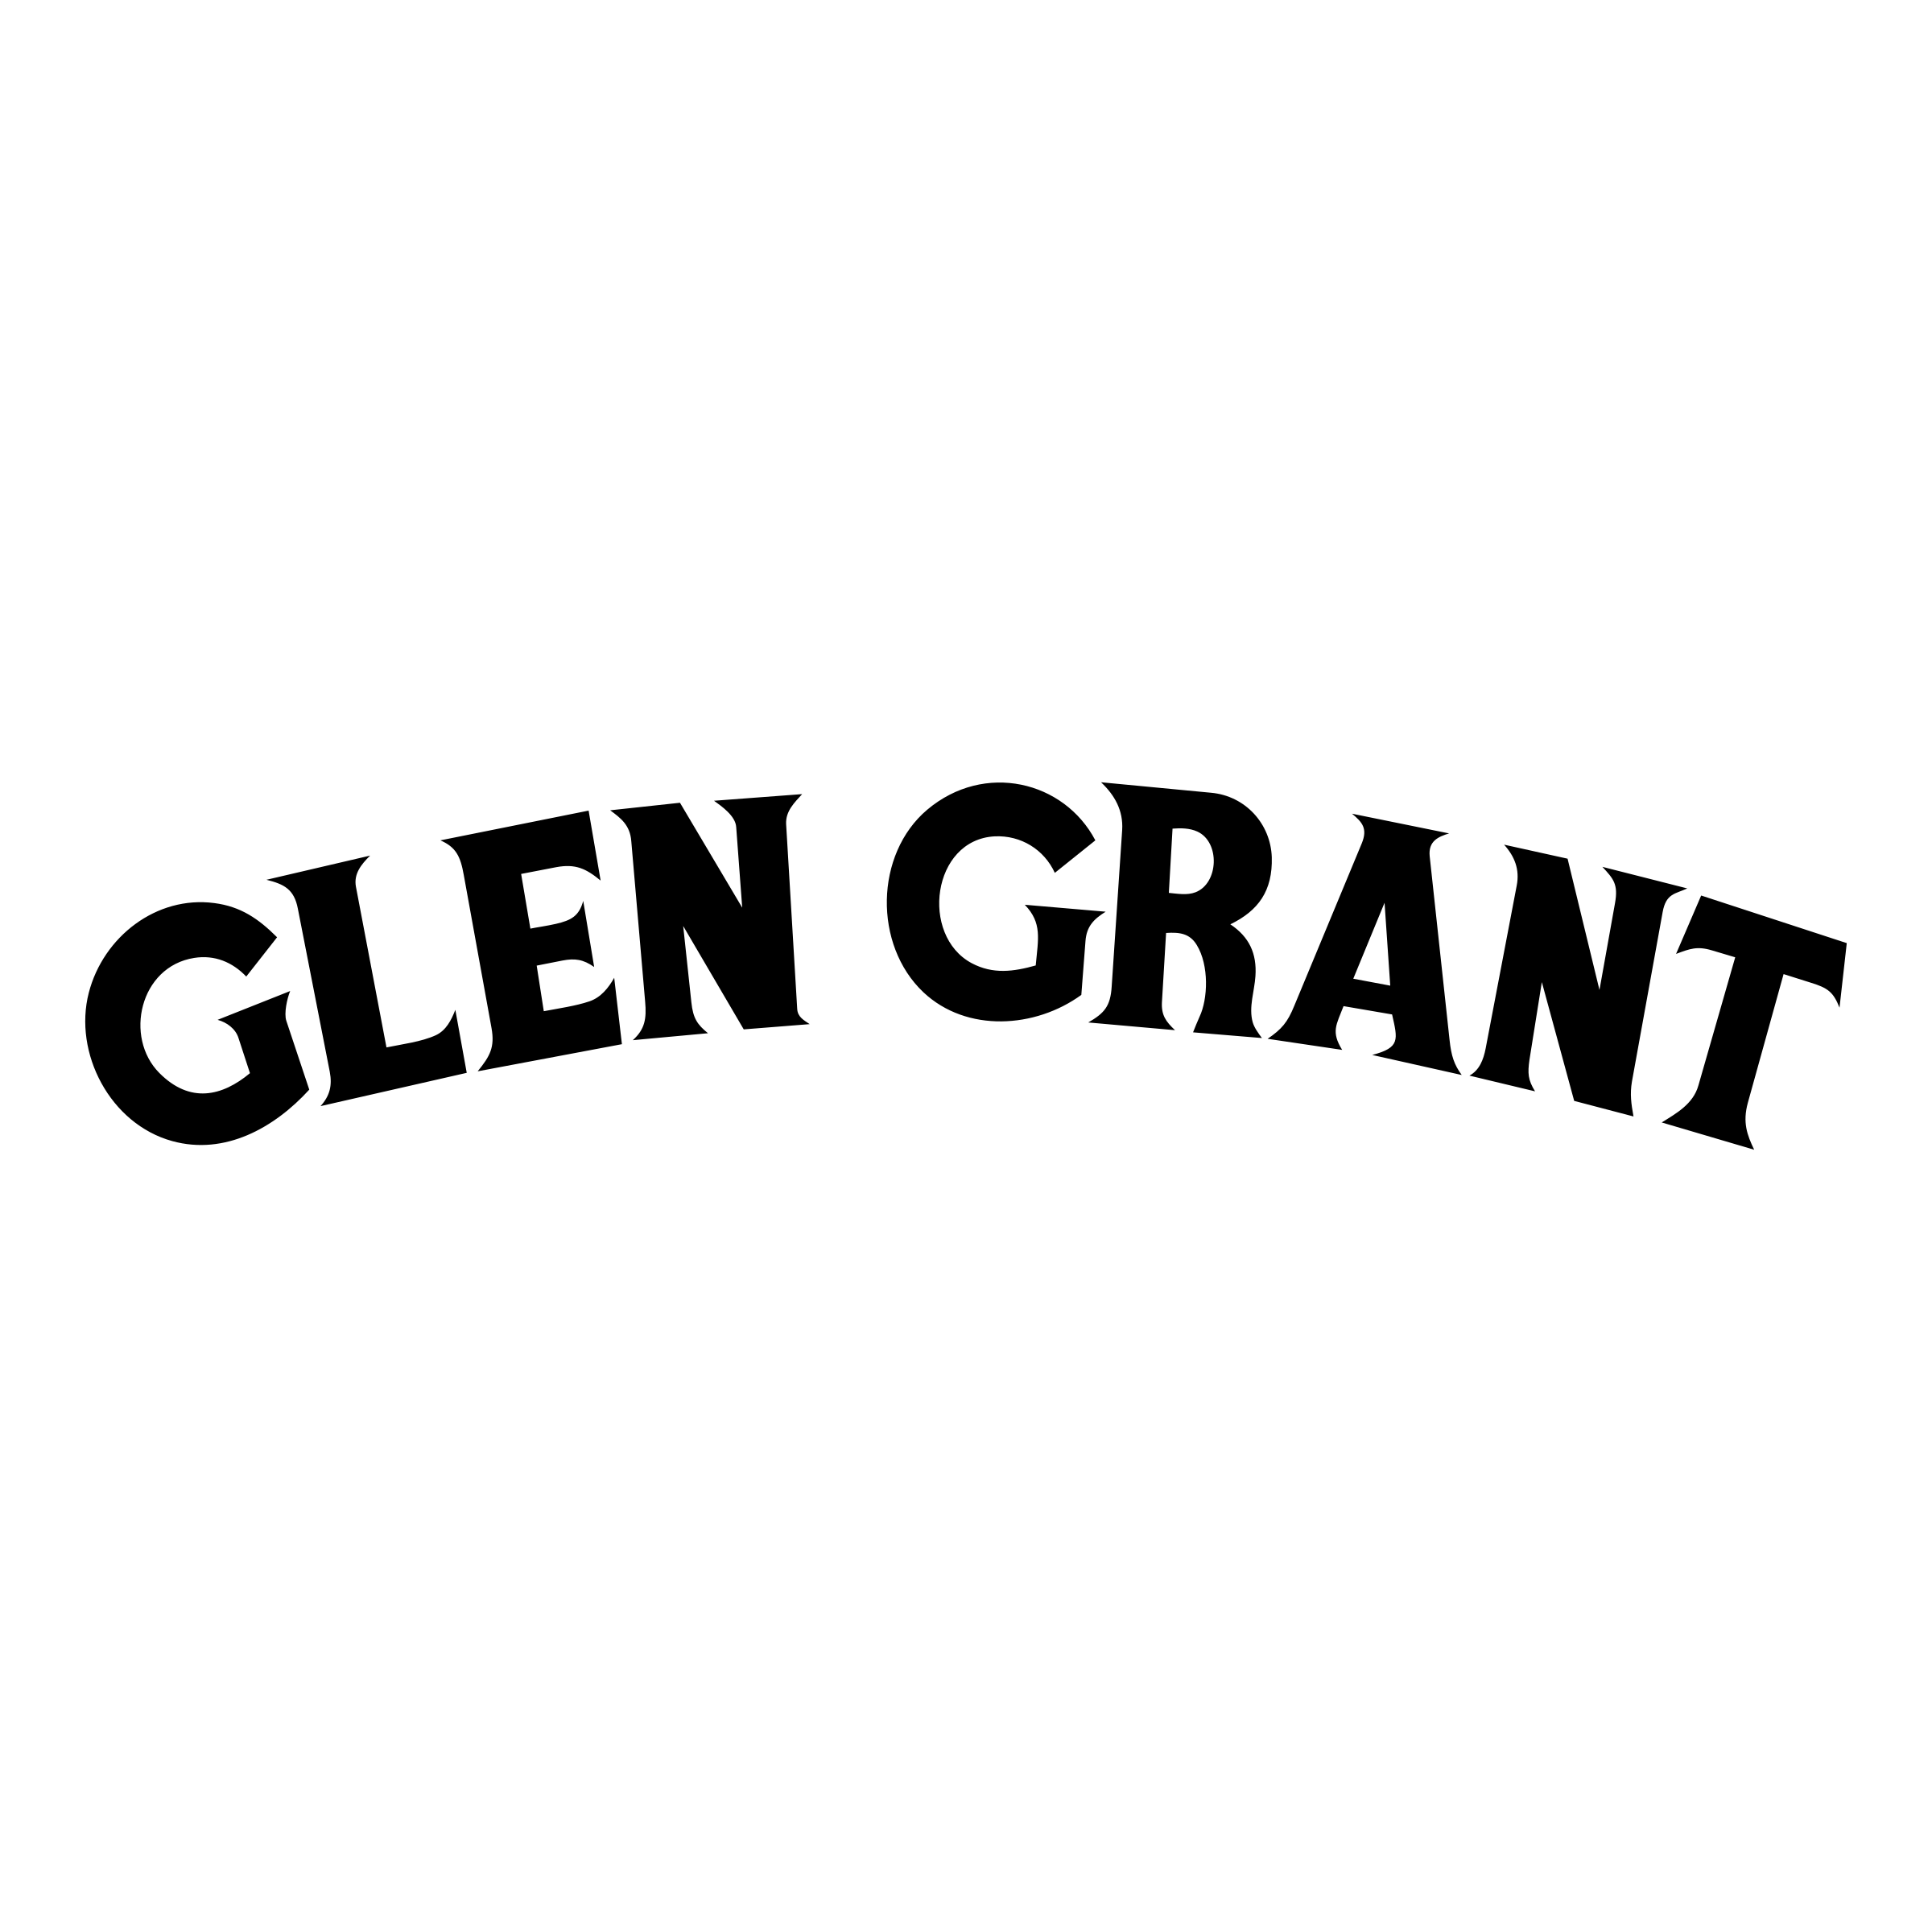 Glen Logo - Glen Grant Logo PNG Transparent & SVG Vector - Freebie Supply